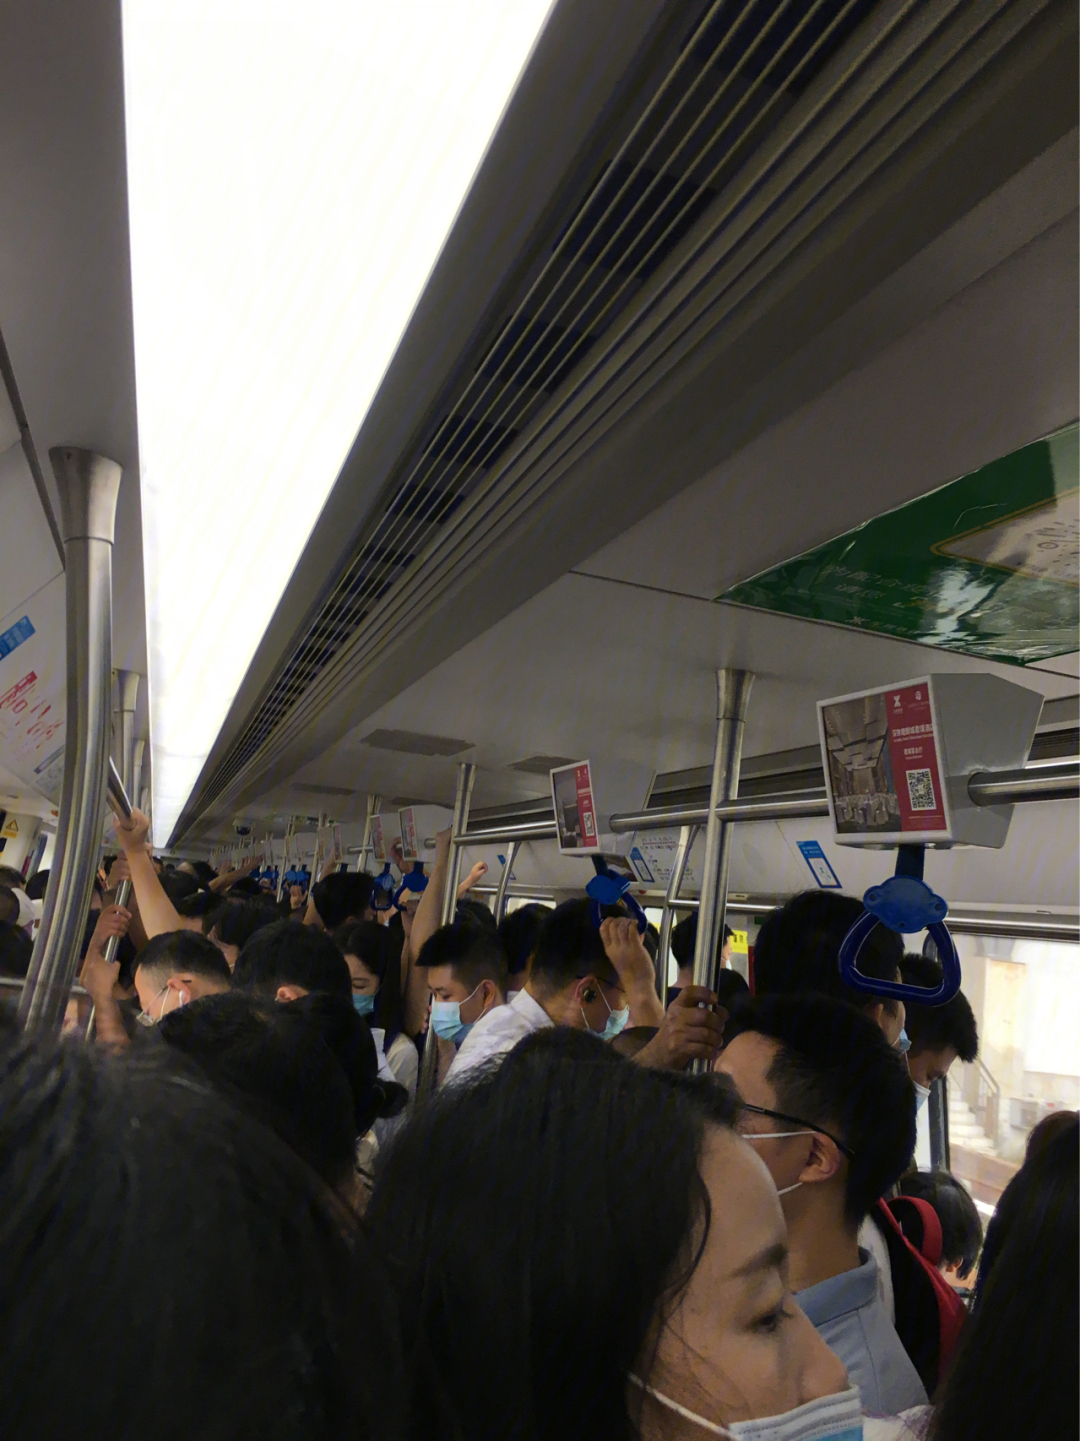 深圳地铁5号线7点30到8点半上班高峰期,一分钟一趟车,前趟车刚走,后趟